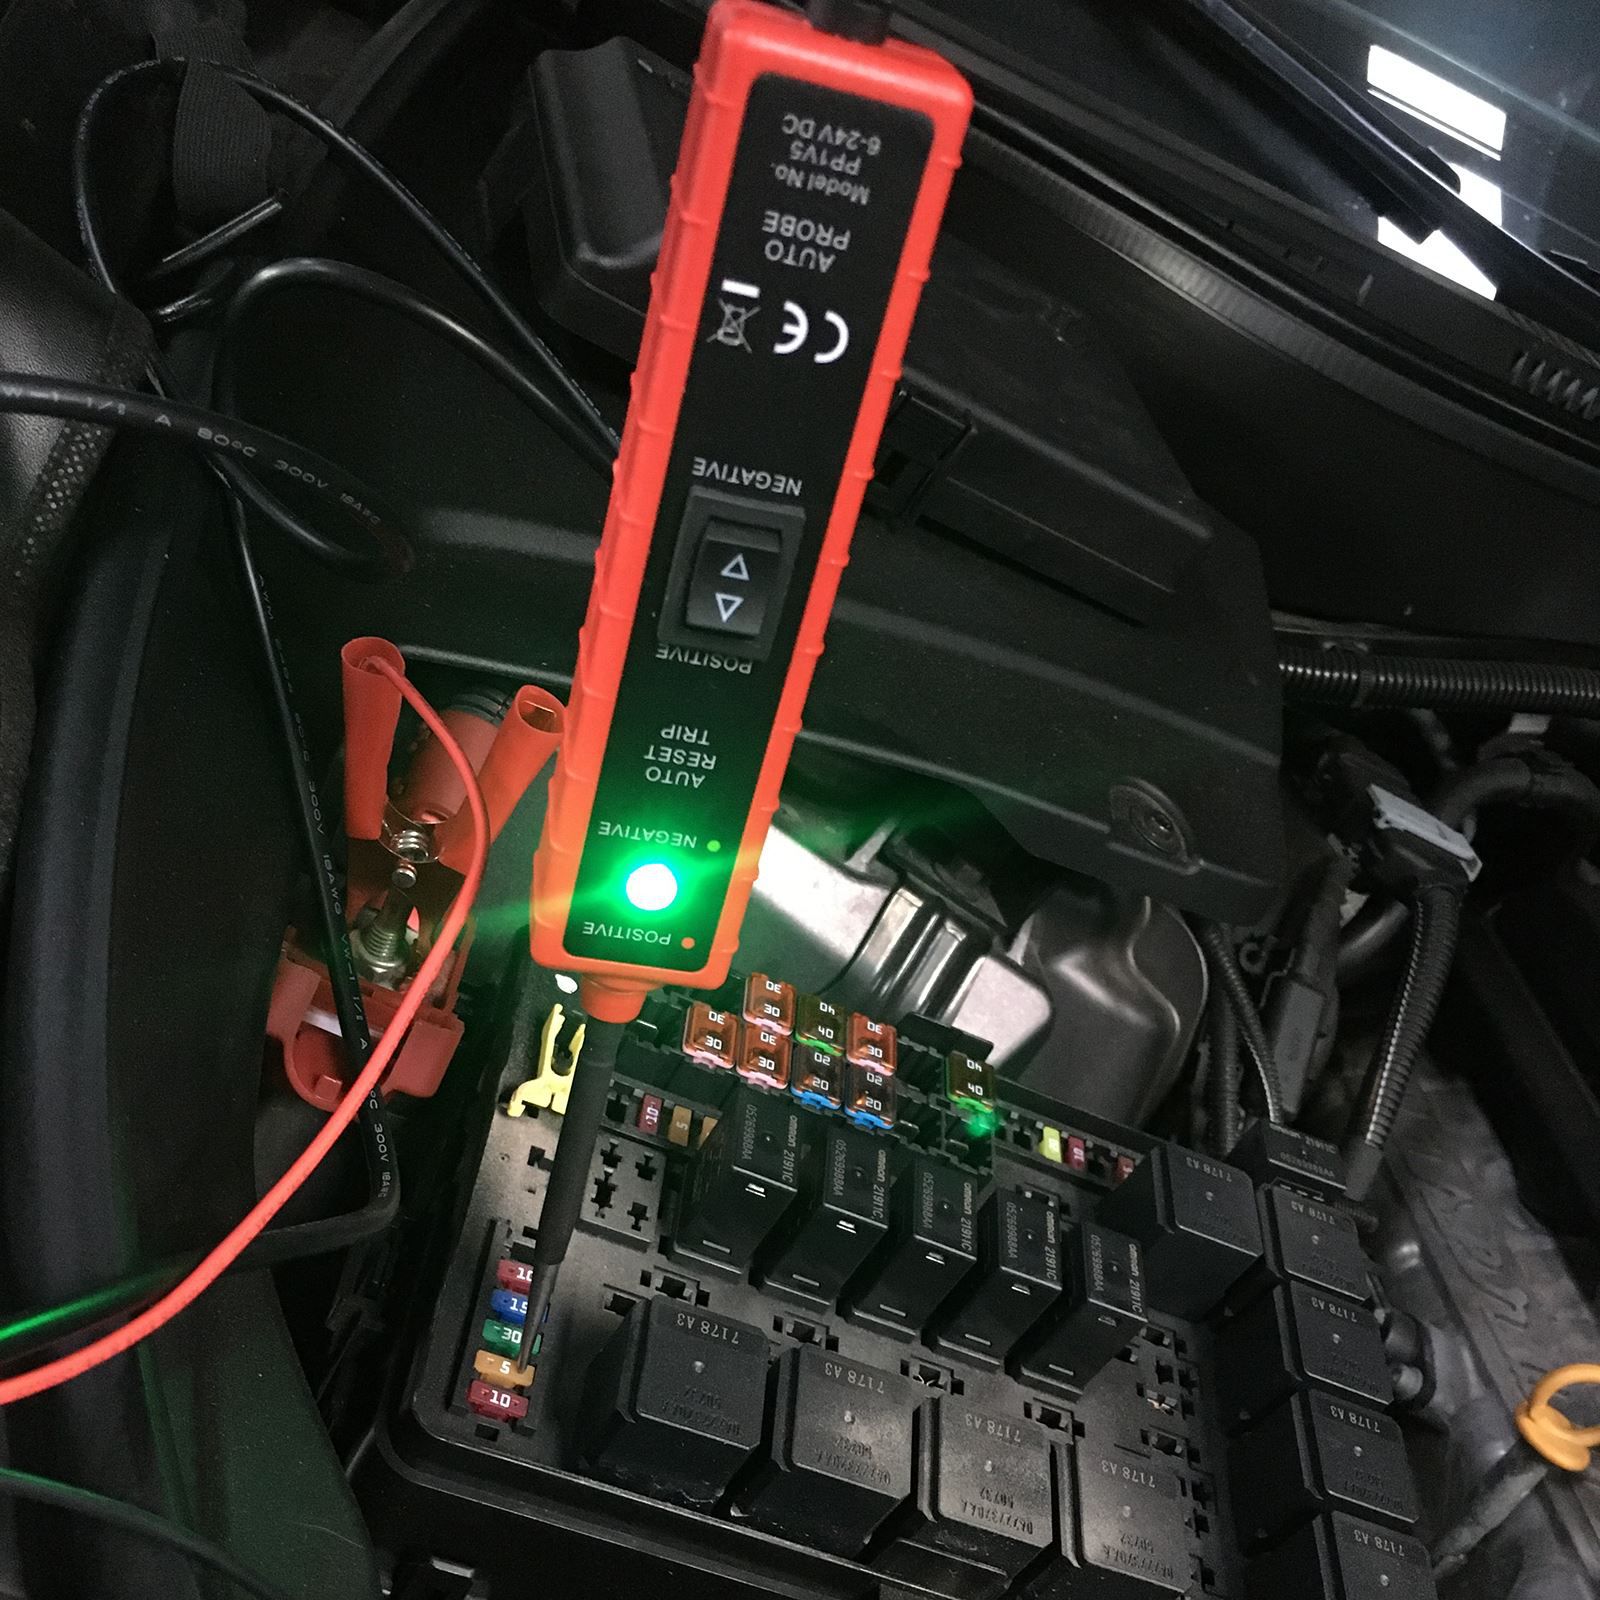 Neue PowerScan Multifunktionale elektrische Systemdiagnose Werkzeug Automotive Circuit Tester Power Scan für Auto Fahrzeug